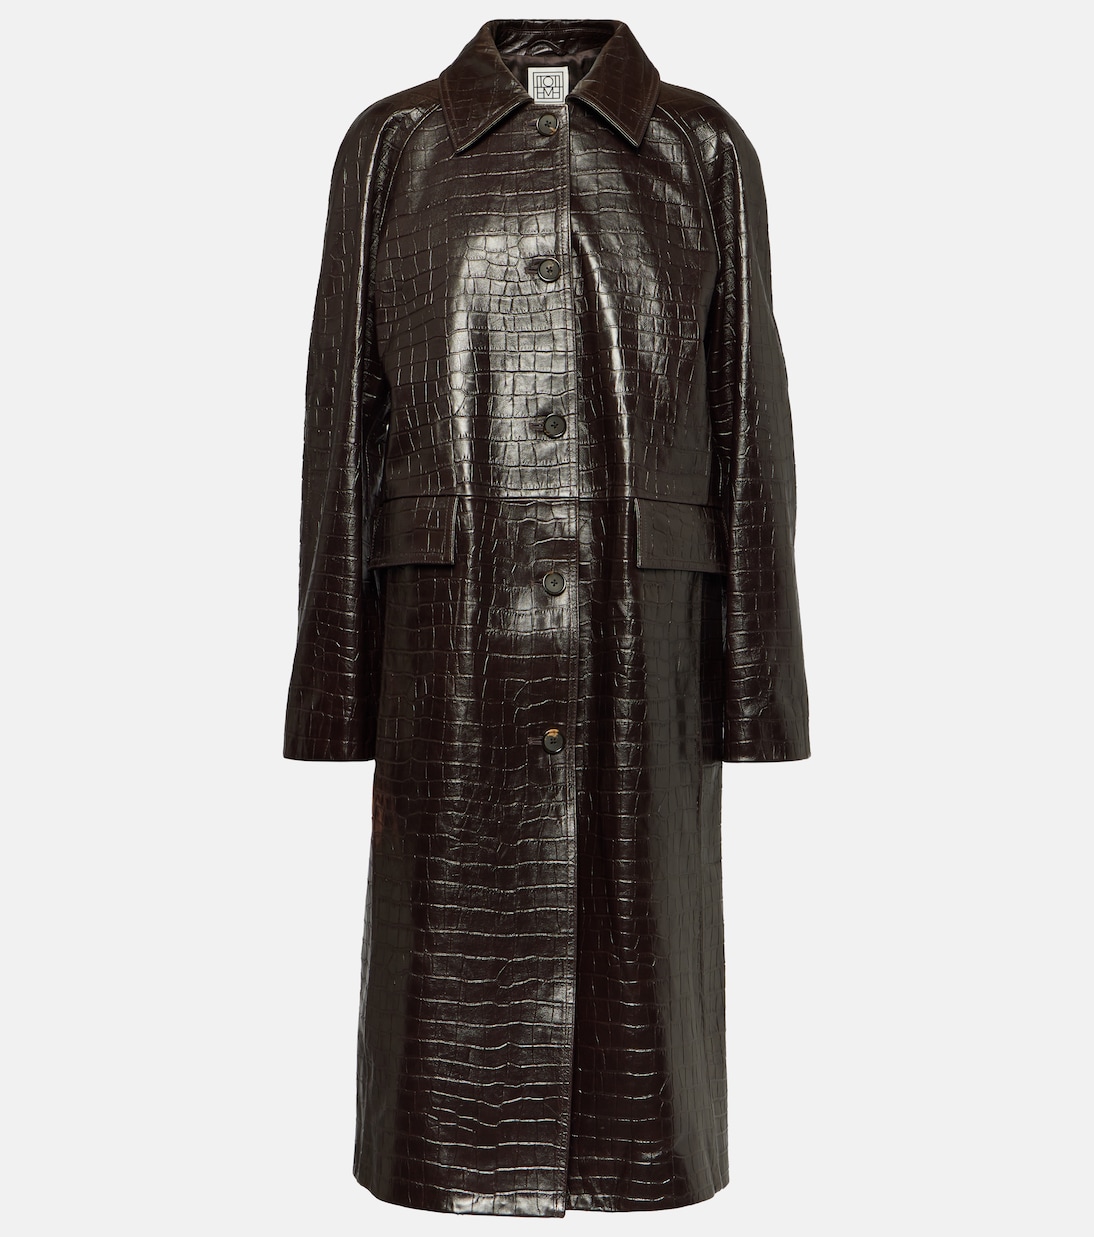 Пальто из кожи с тиснением под крокодила Toteme, коричневый